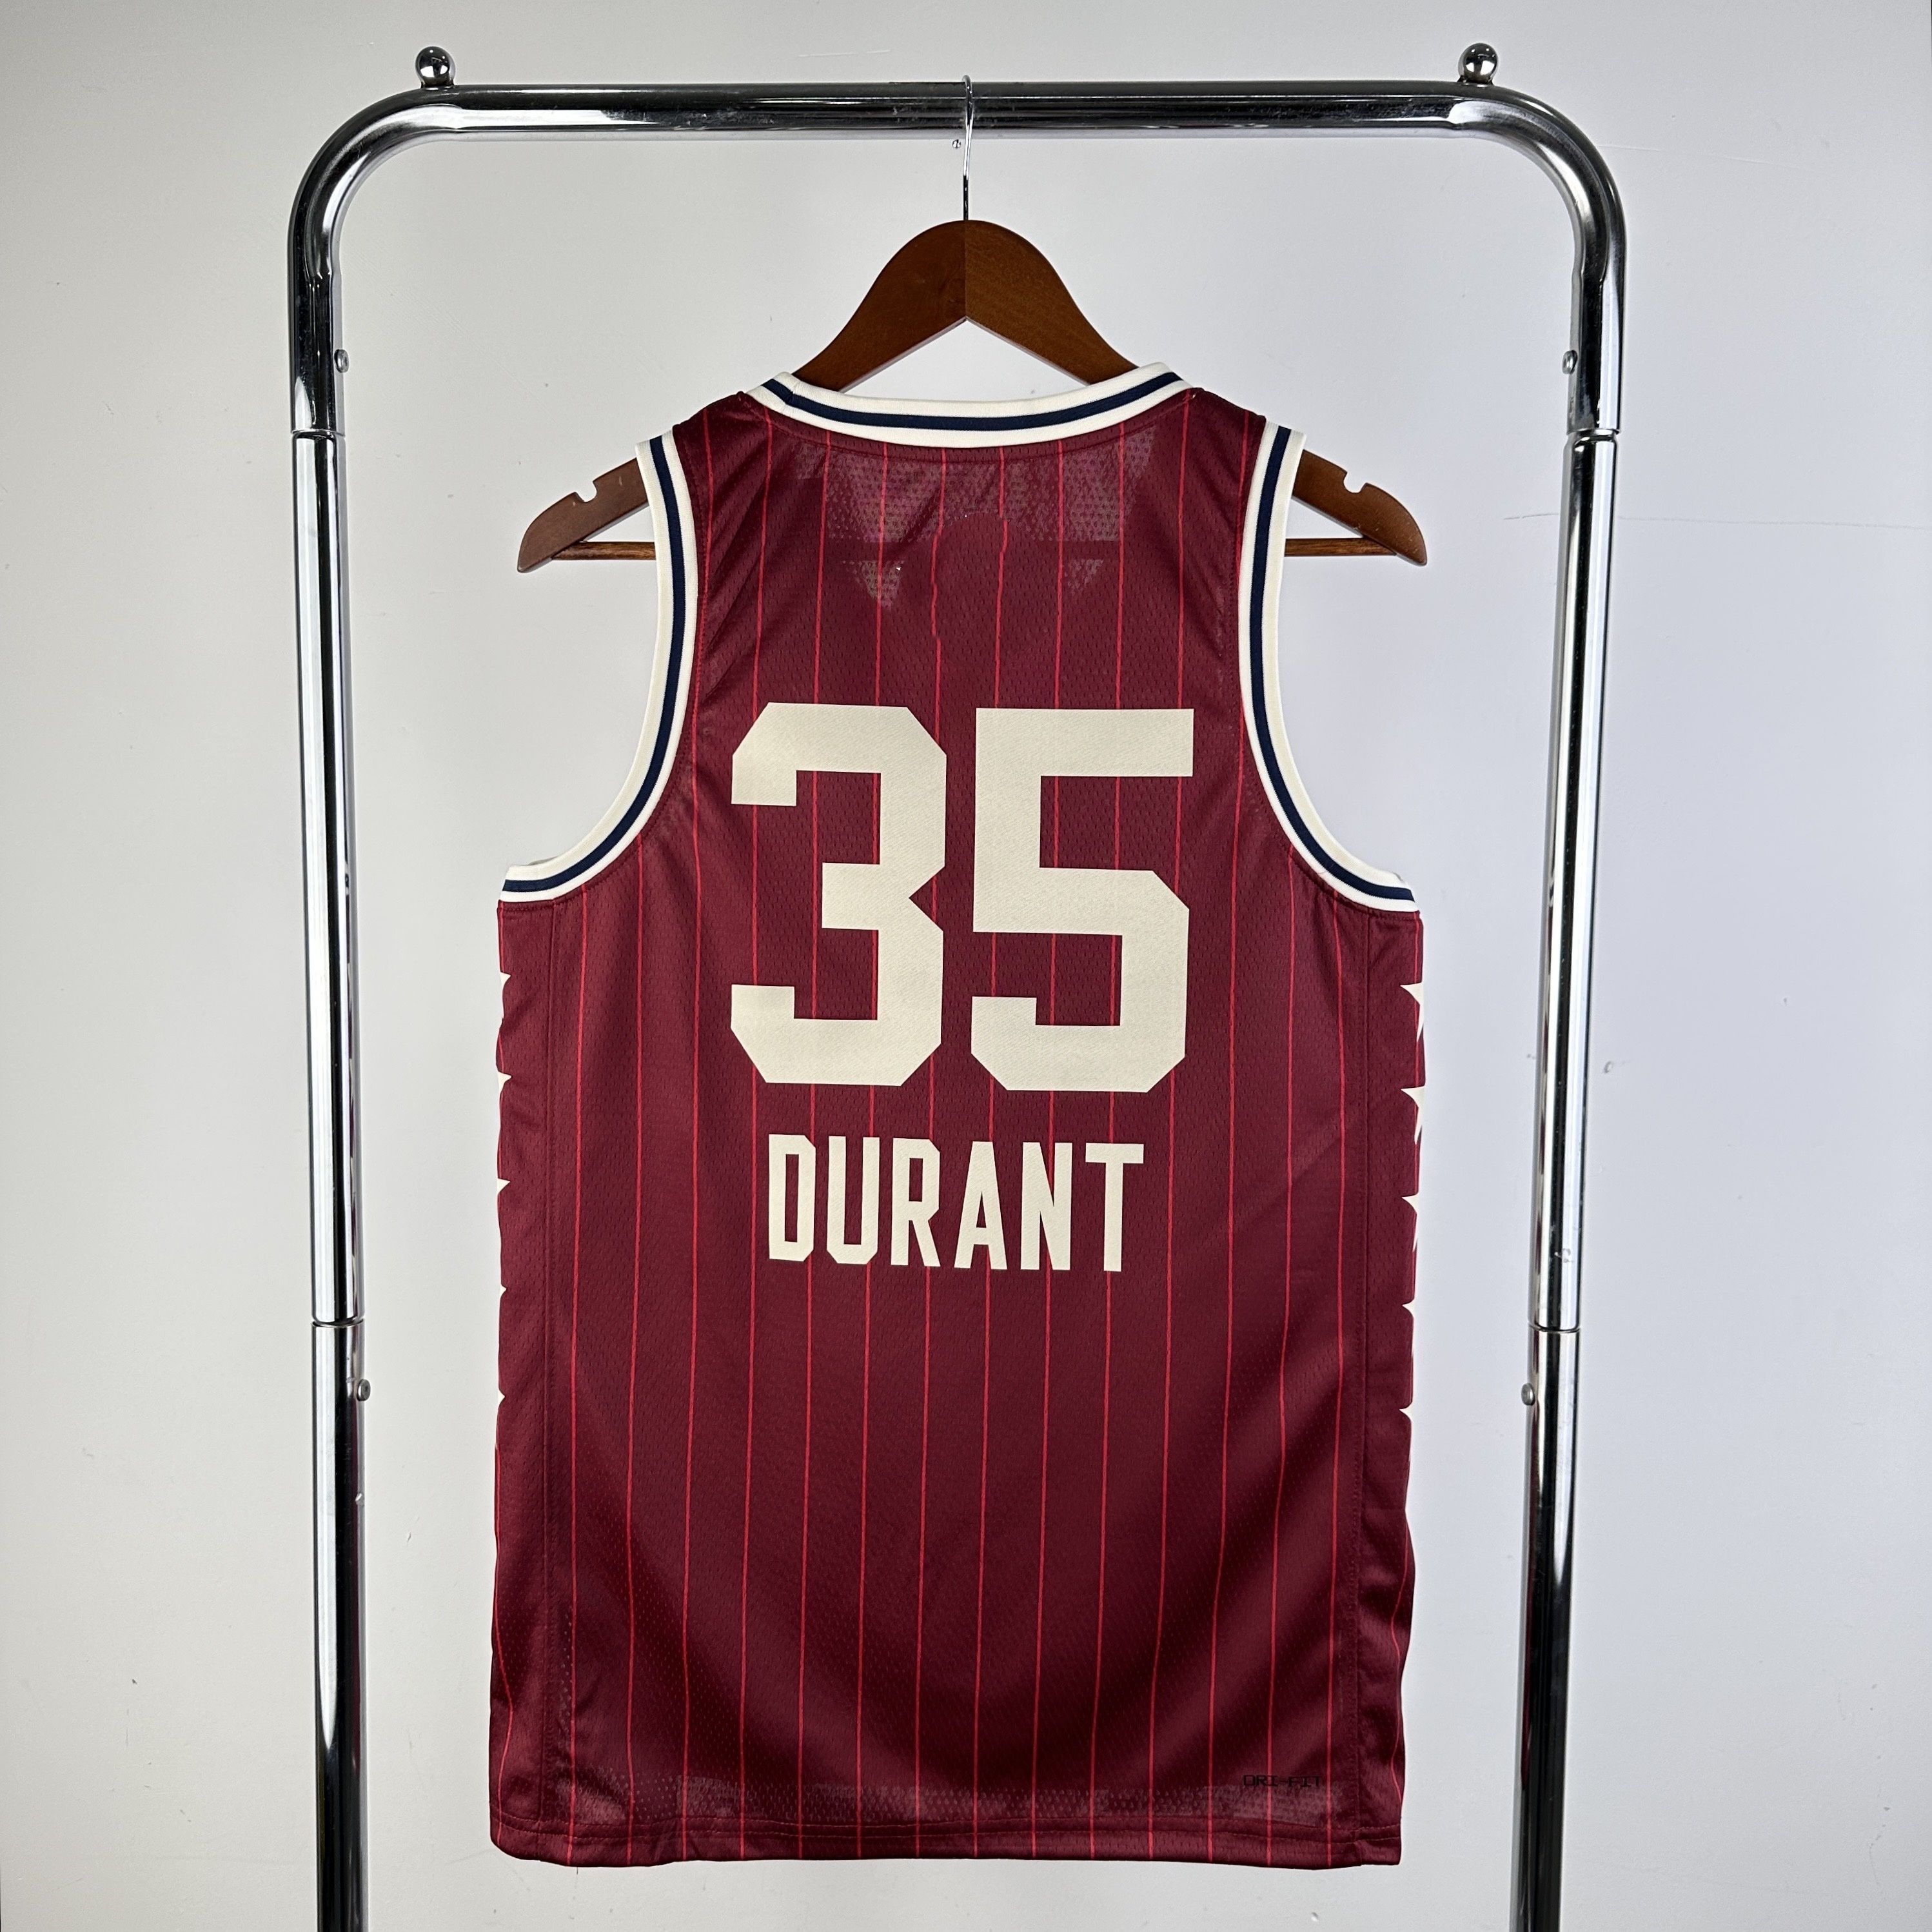 # 35 Durant